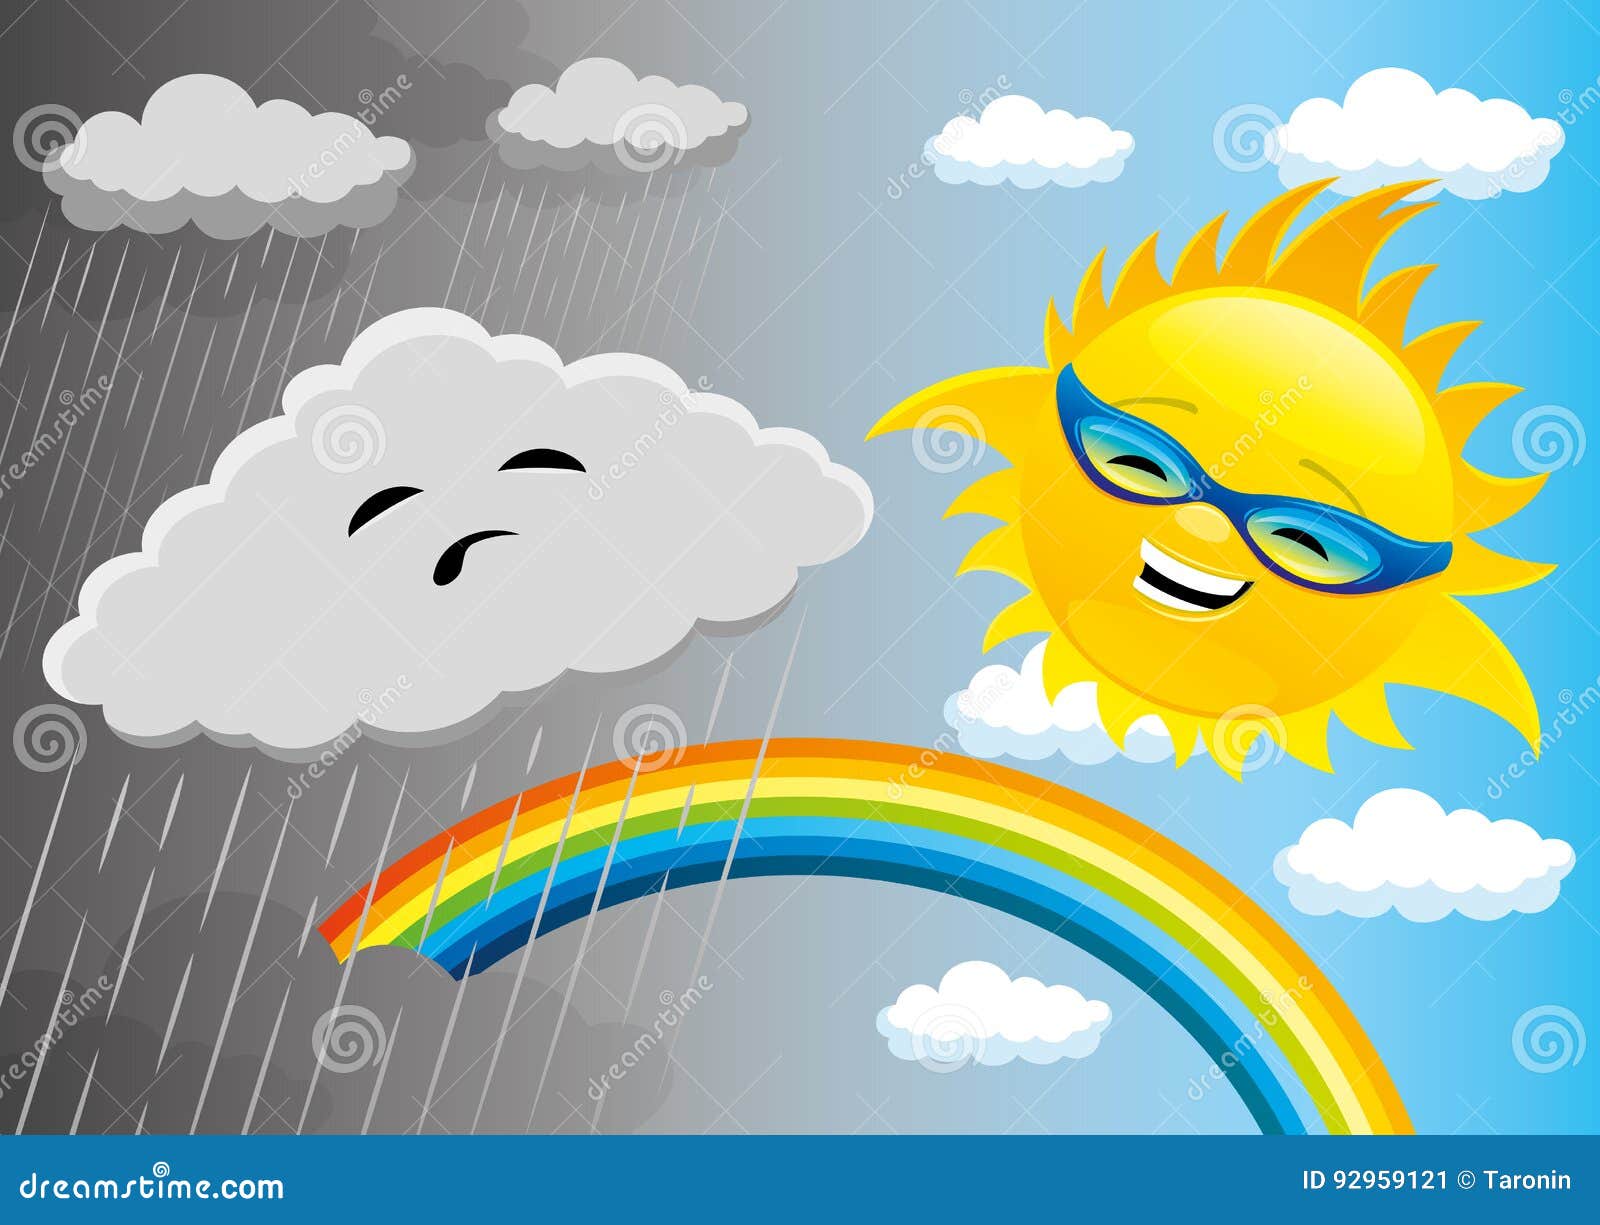 Какая погода на солнце. Нарисовать солнечную погоду. Солнечный и пасмурный день рисунок. Туча и солнце Радуга арт. Weather рисования.